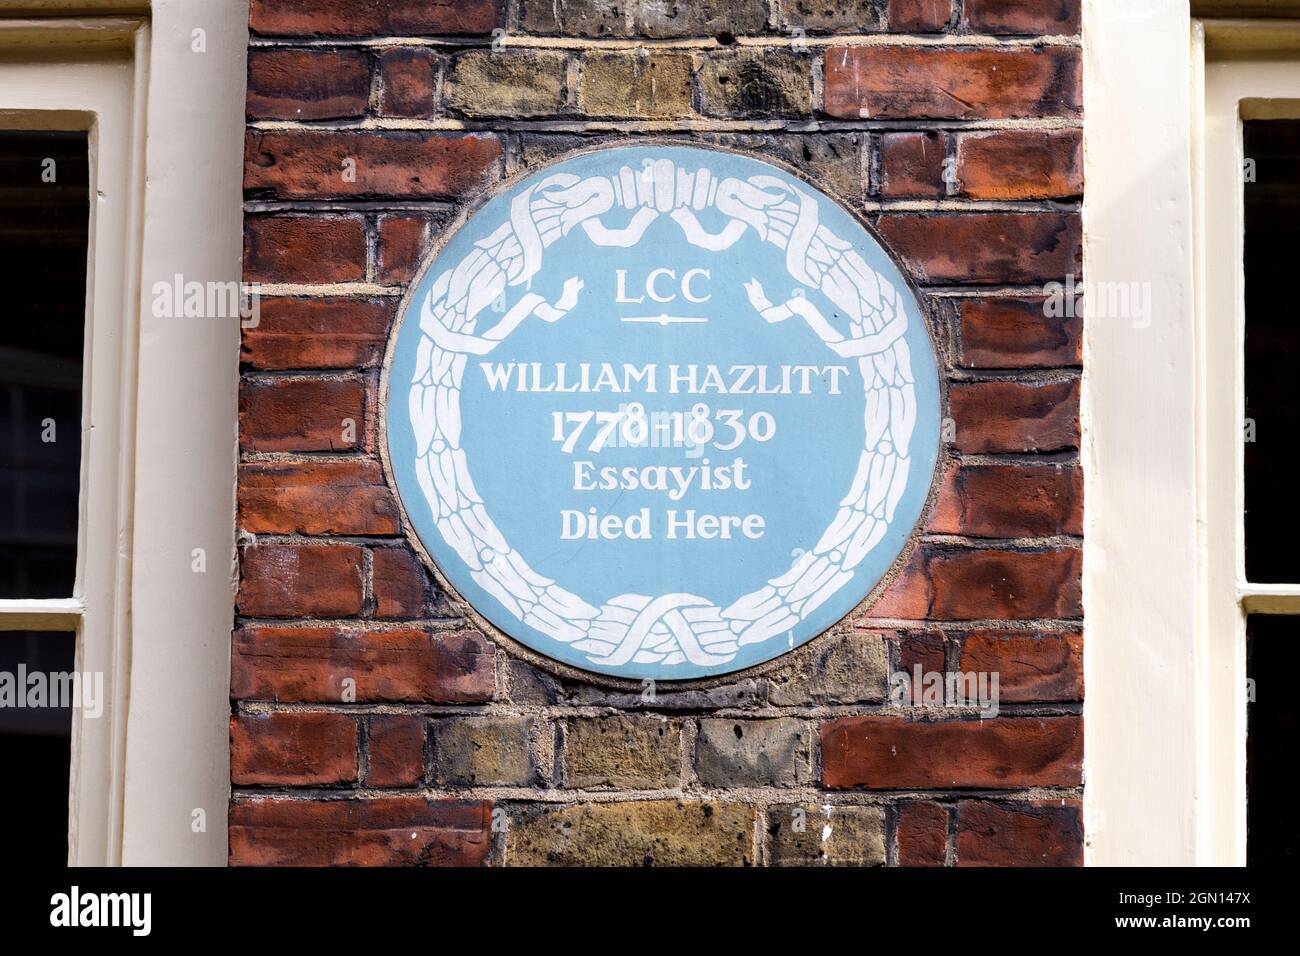 Blaue Plakette für William Hazlitt - Englisch, Essayist, Kritiker und Philosoph am Ort seines Todes, Frith Street, Soho, London, Großbritannien Stockfoto